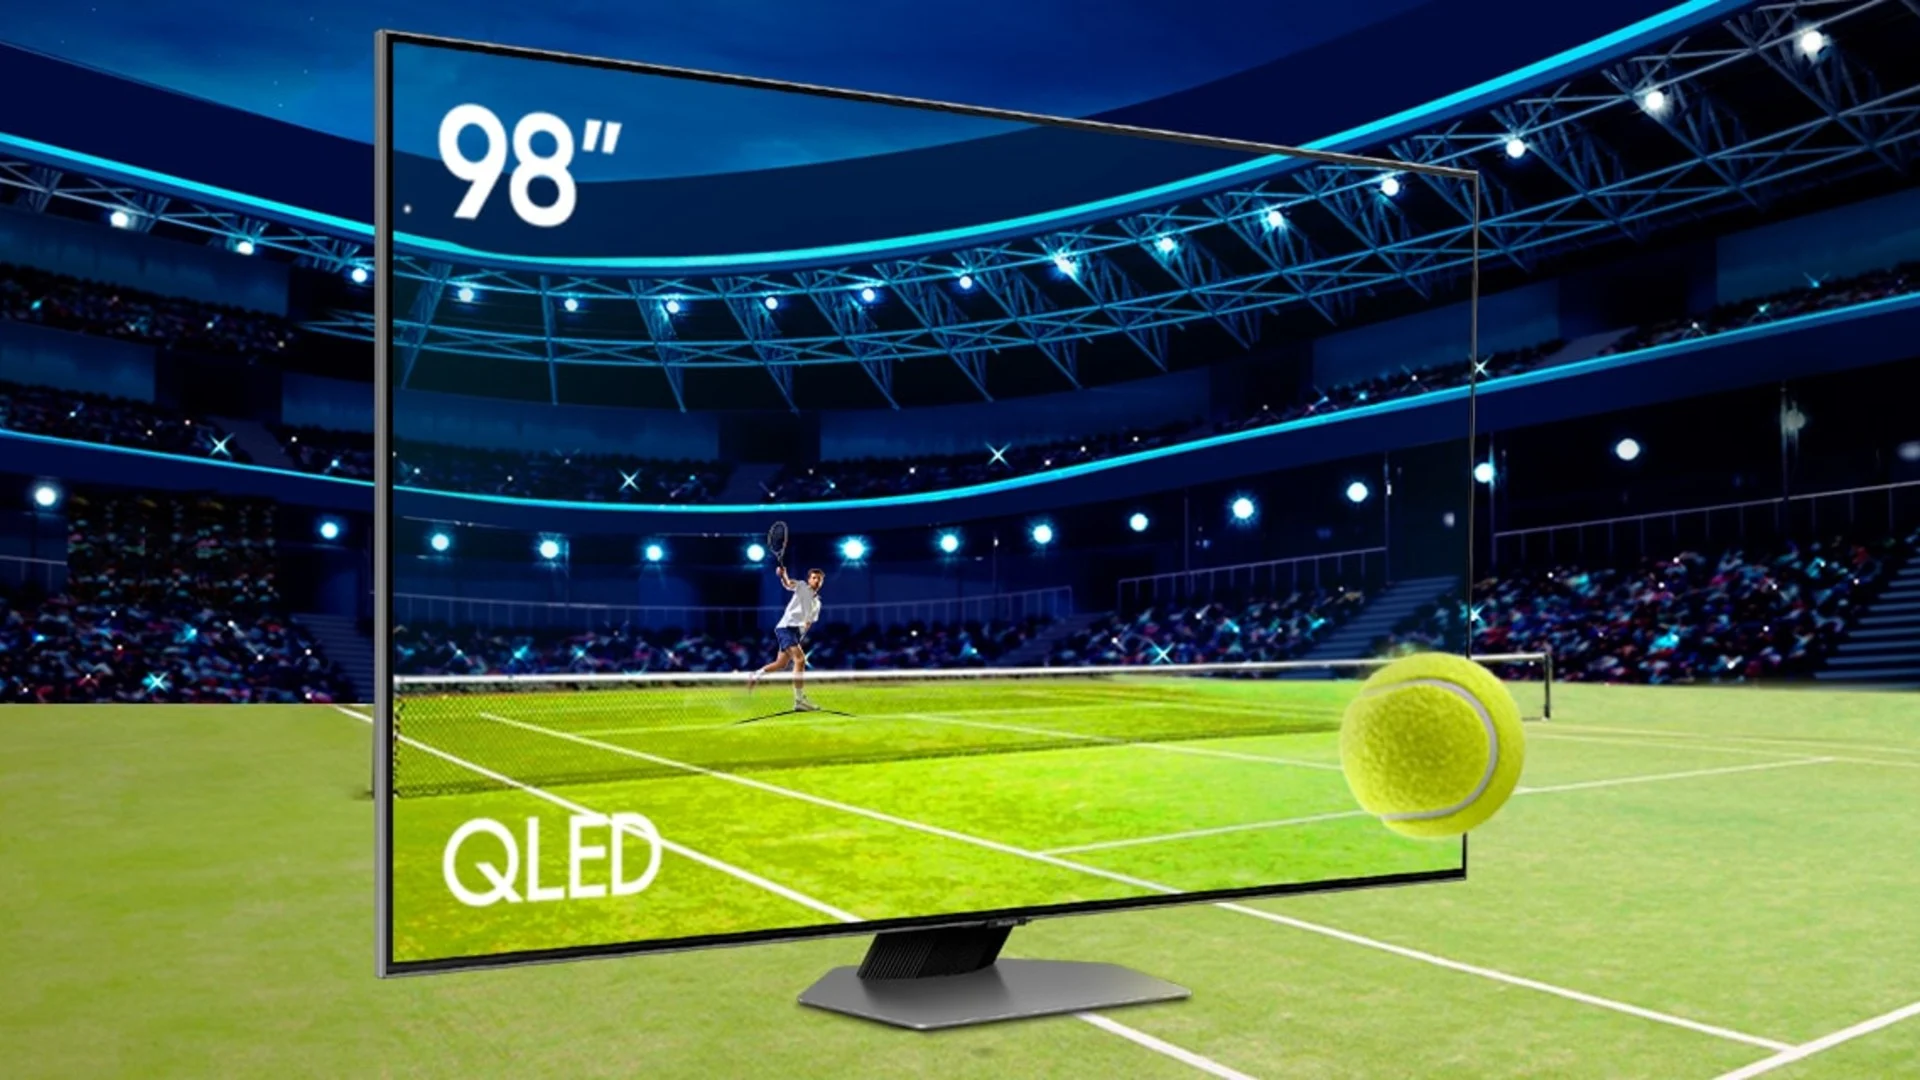 Banner promocional para divulgar a TV 98 polegadas Samsung, exibindo um jogo de tênis